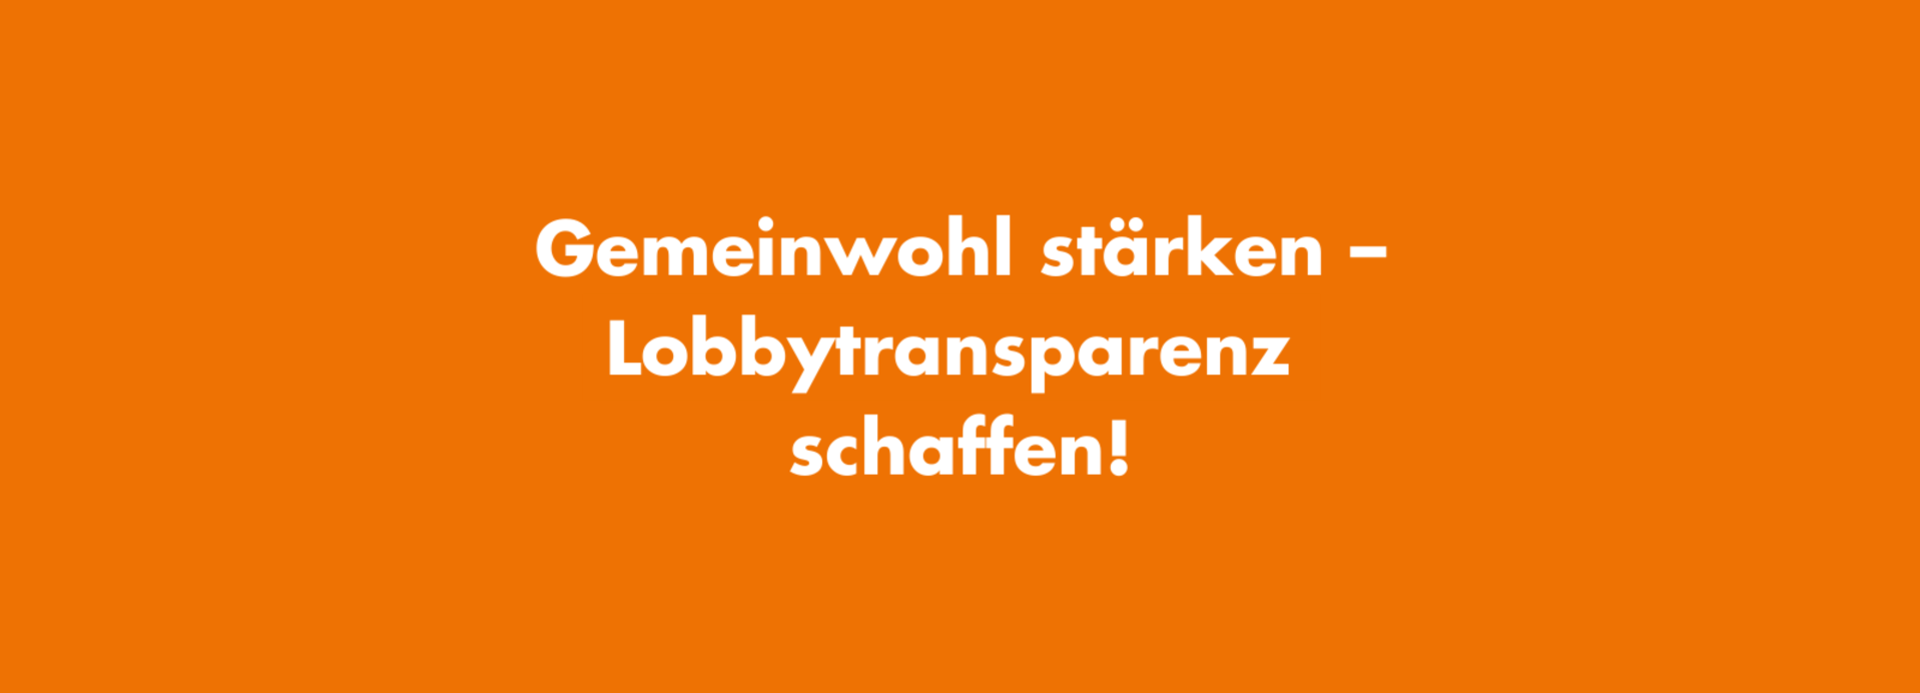 Gemeinwohl stärken – Lobbytransparenz schaffen!